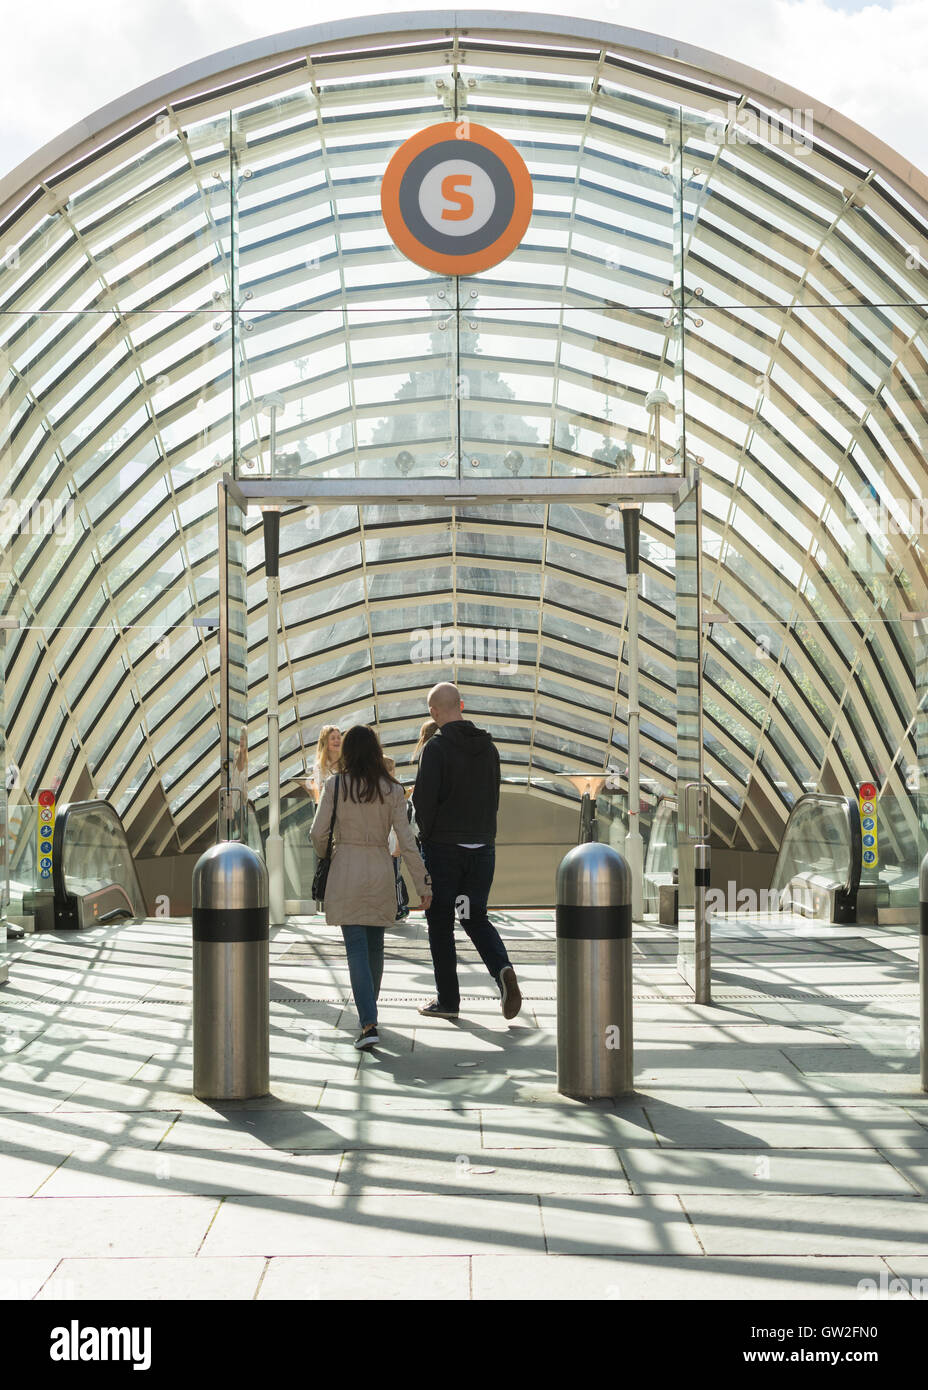 Métro de Glasgow - entrée de la Station de St Enoch, Glasgow, Écosse, Royaume-Uni Banque D'Images